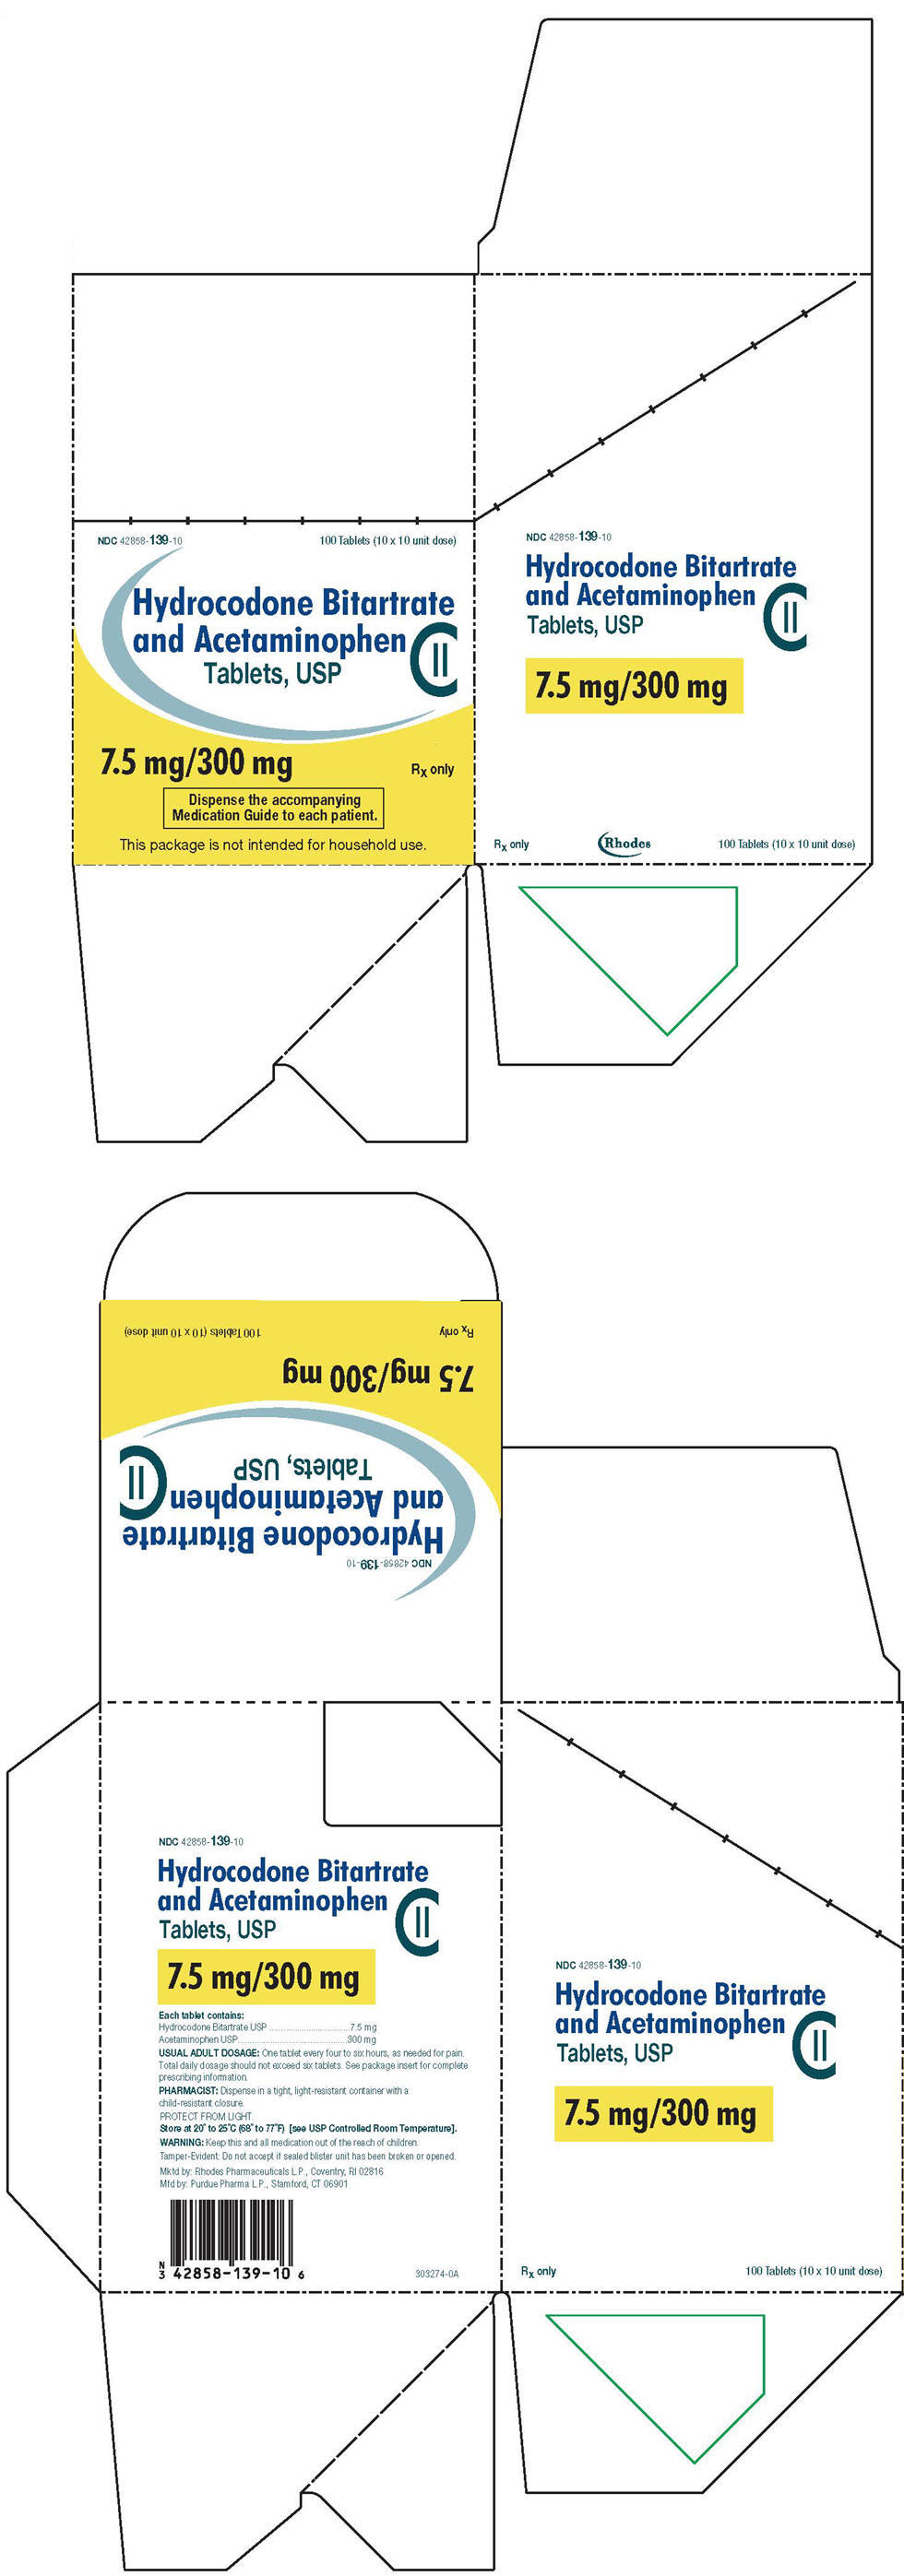 PRINCIPAL DISPLAY PANEL - 7.5 mg/300 mg Tablet Blister Pack Carton